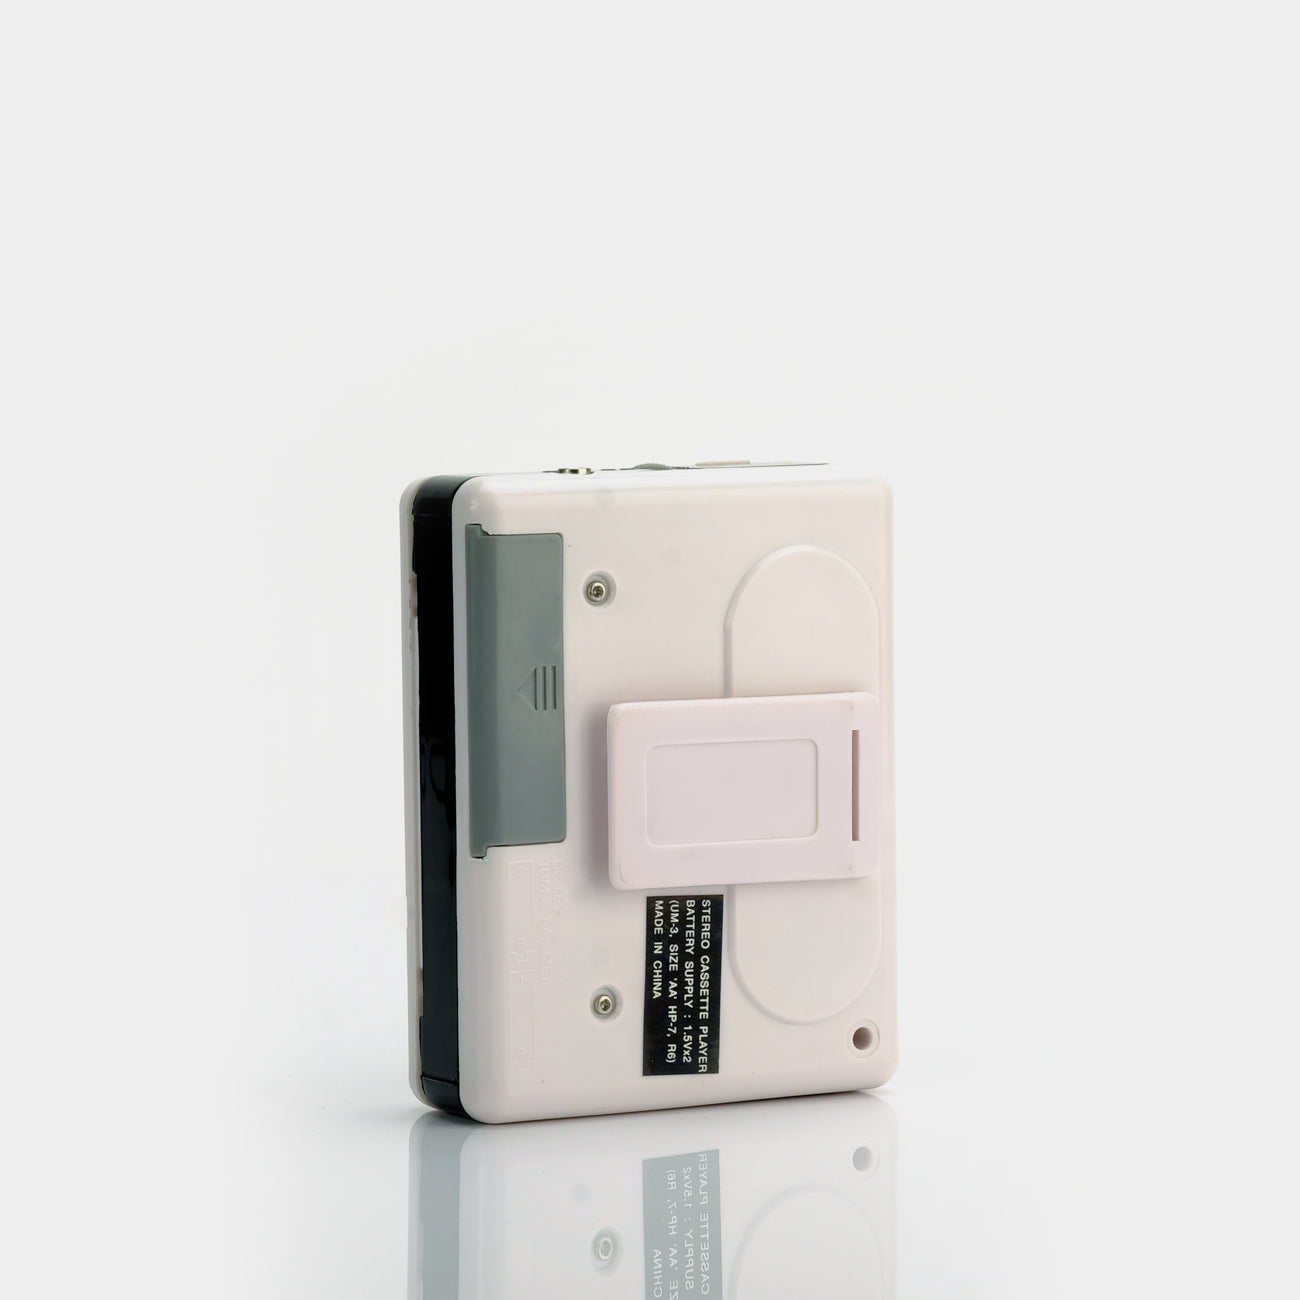 DSI LA Rock Portable Cassette Player